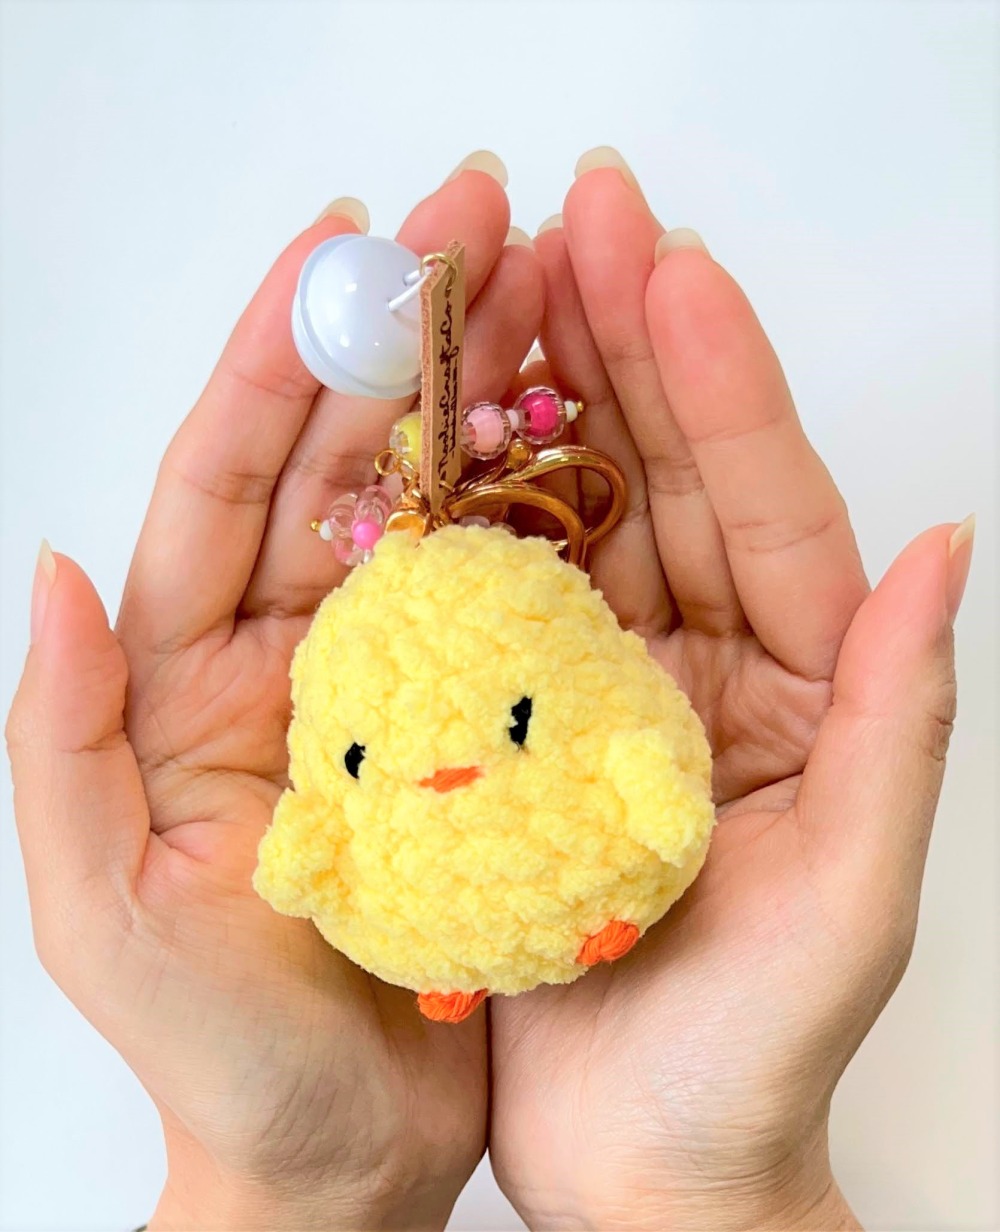 Mini Chick Crochet Plushie Keychain, Amigurumi